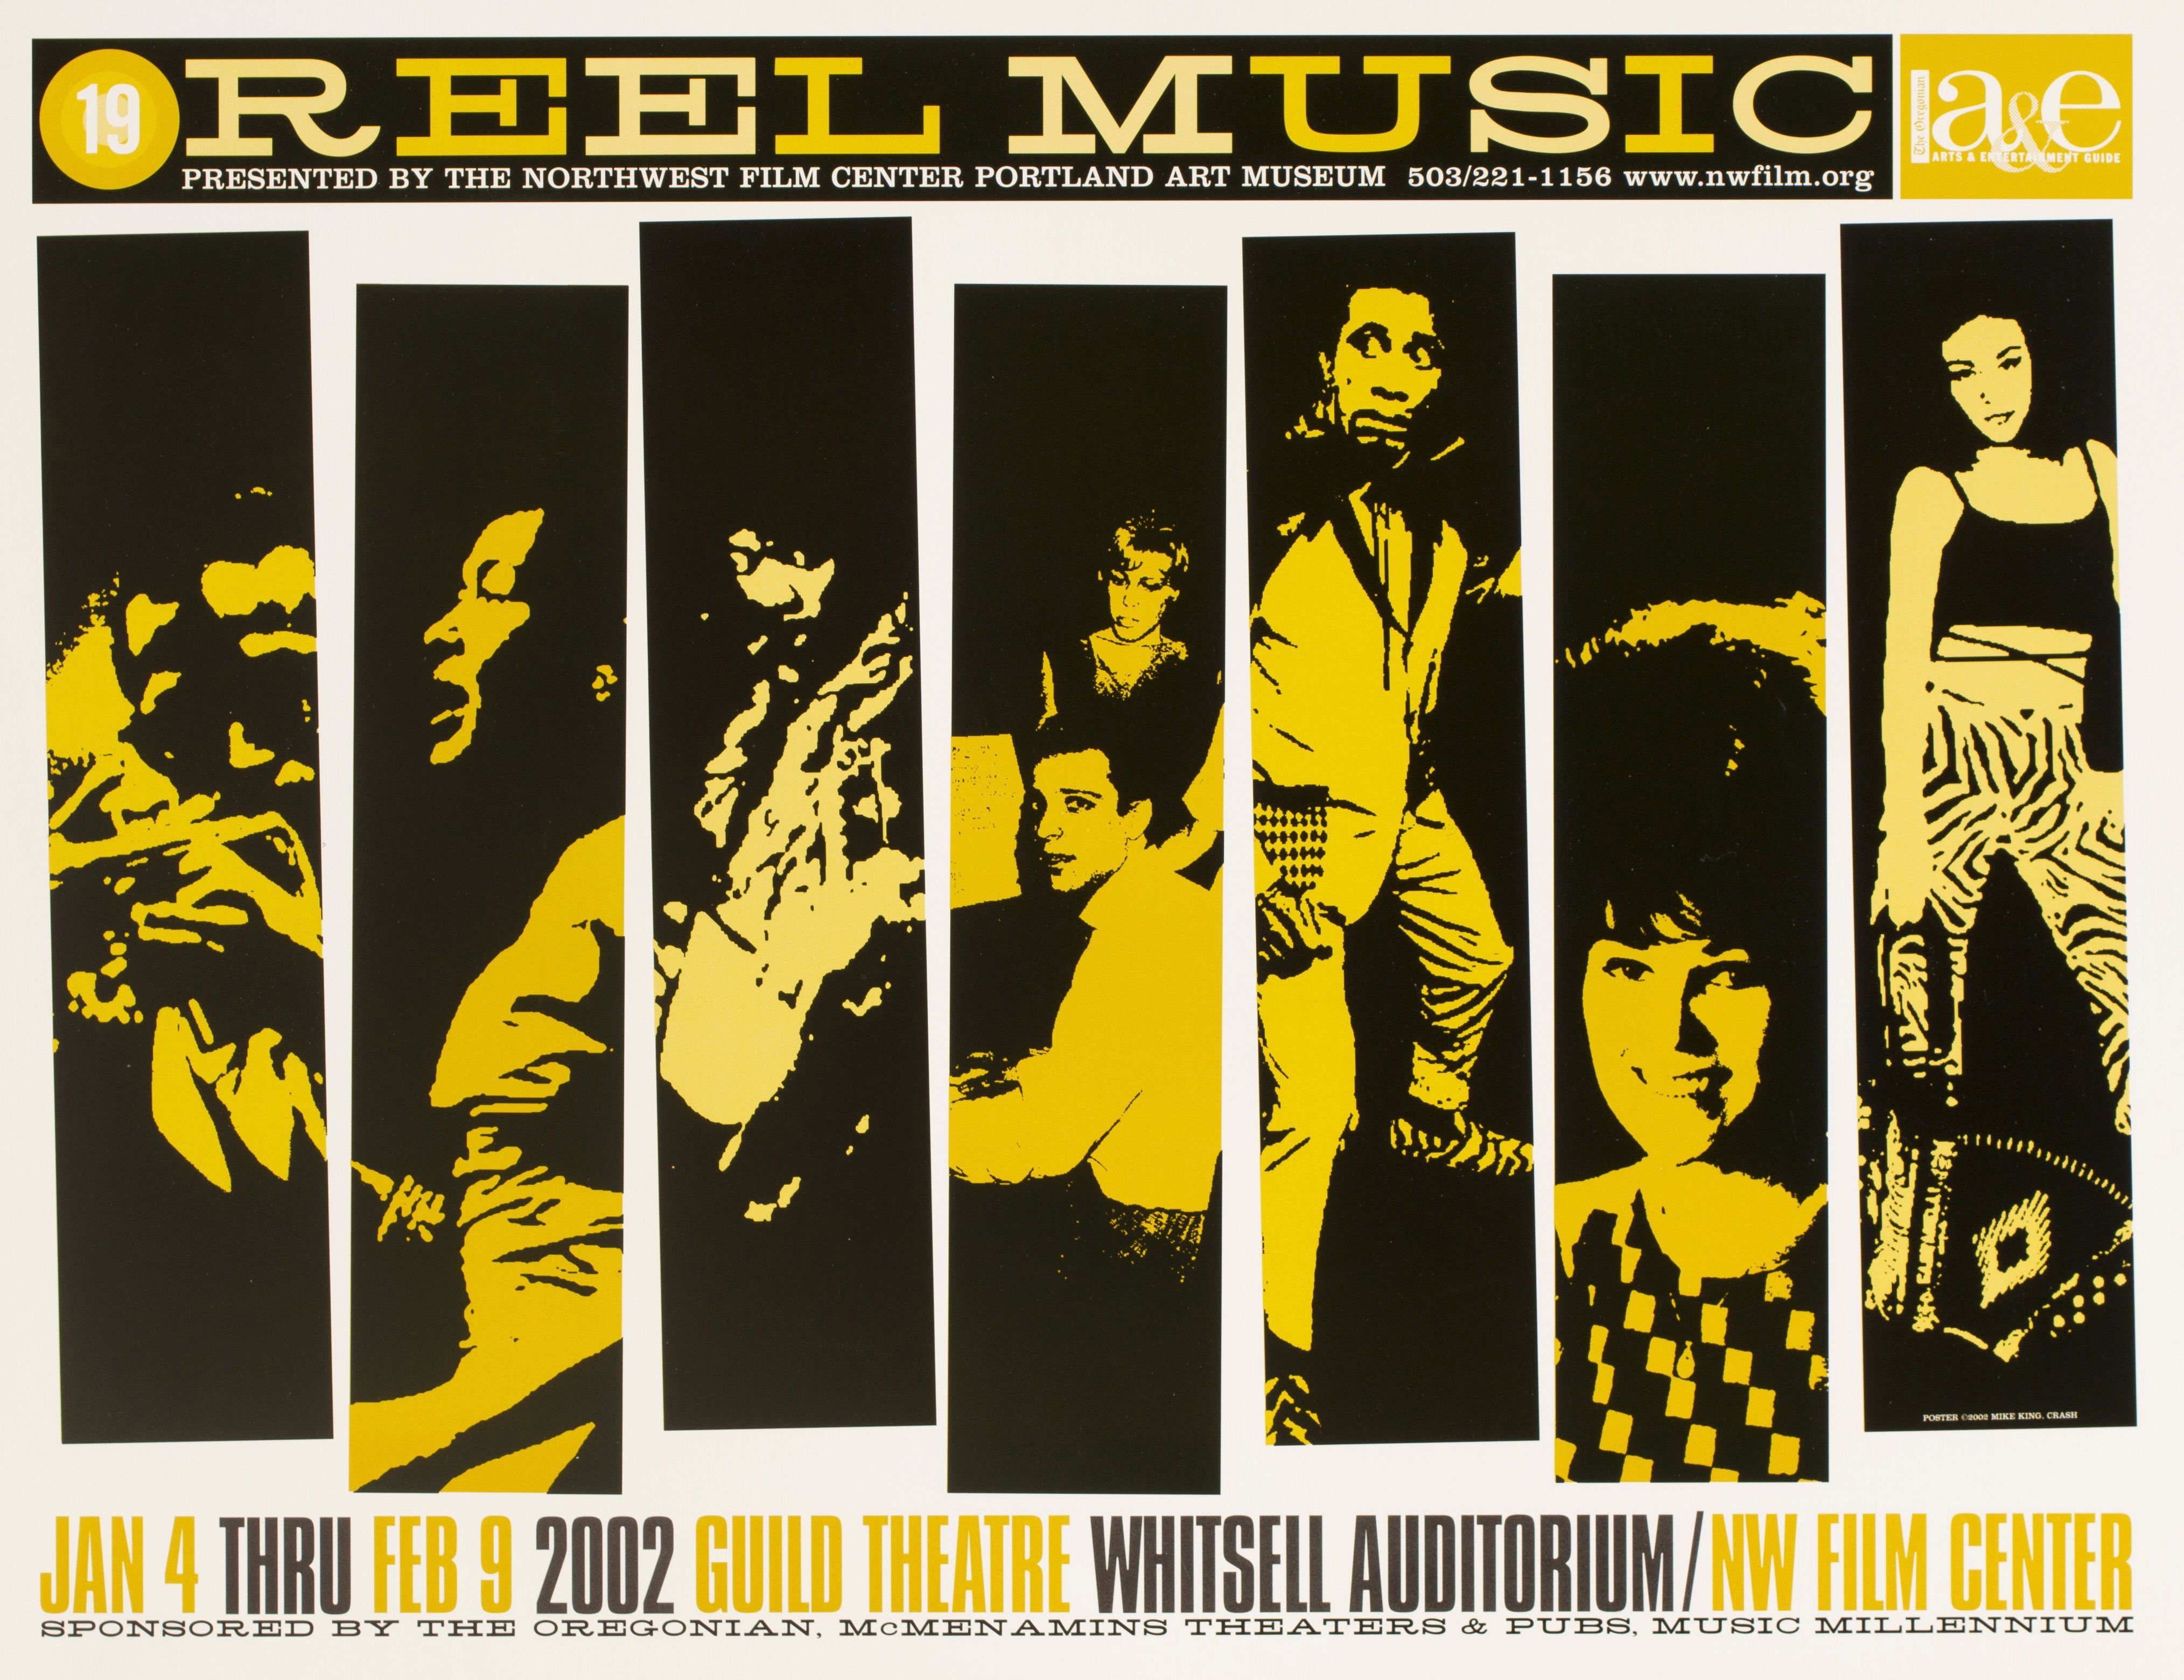 MXP-194.4 Reel Music Festival -event 2000 Whitsell Auditorium  Jul 21 Concert Poster